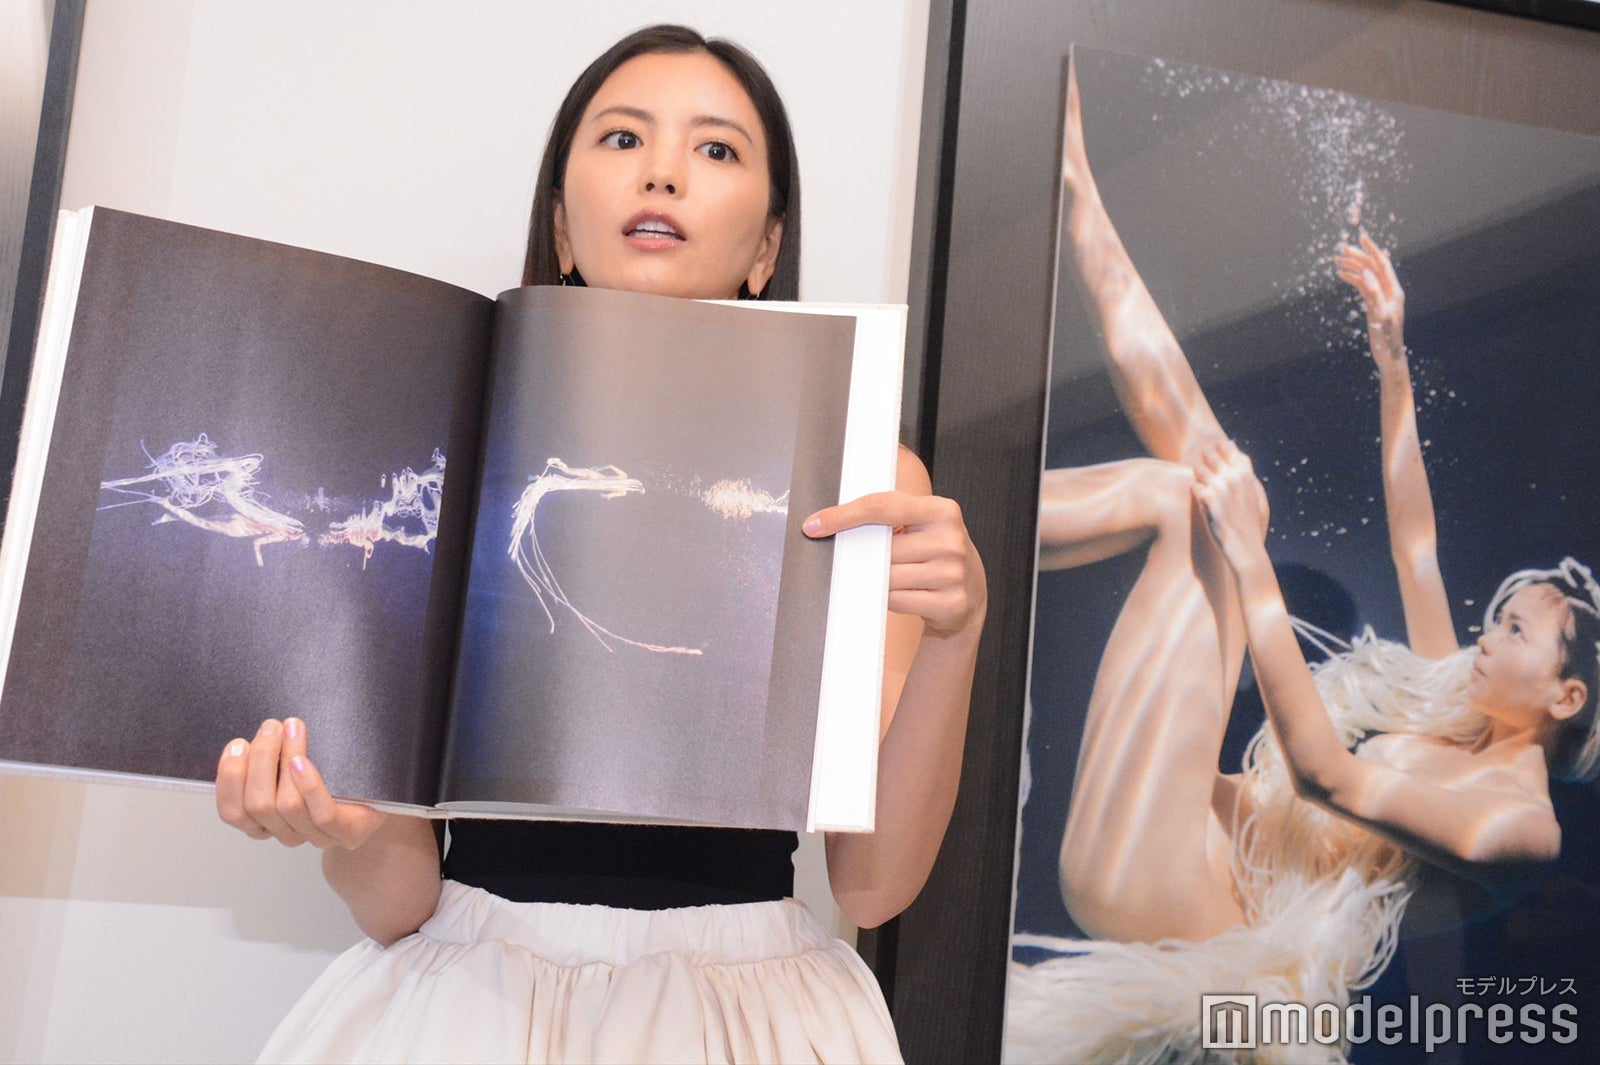 矢野未希子、初の自費出版写真集撮影でハプニング「溺れそうになって